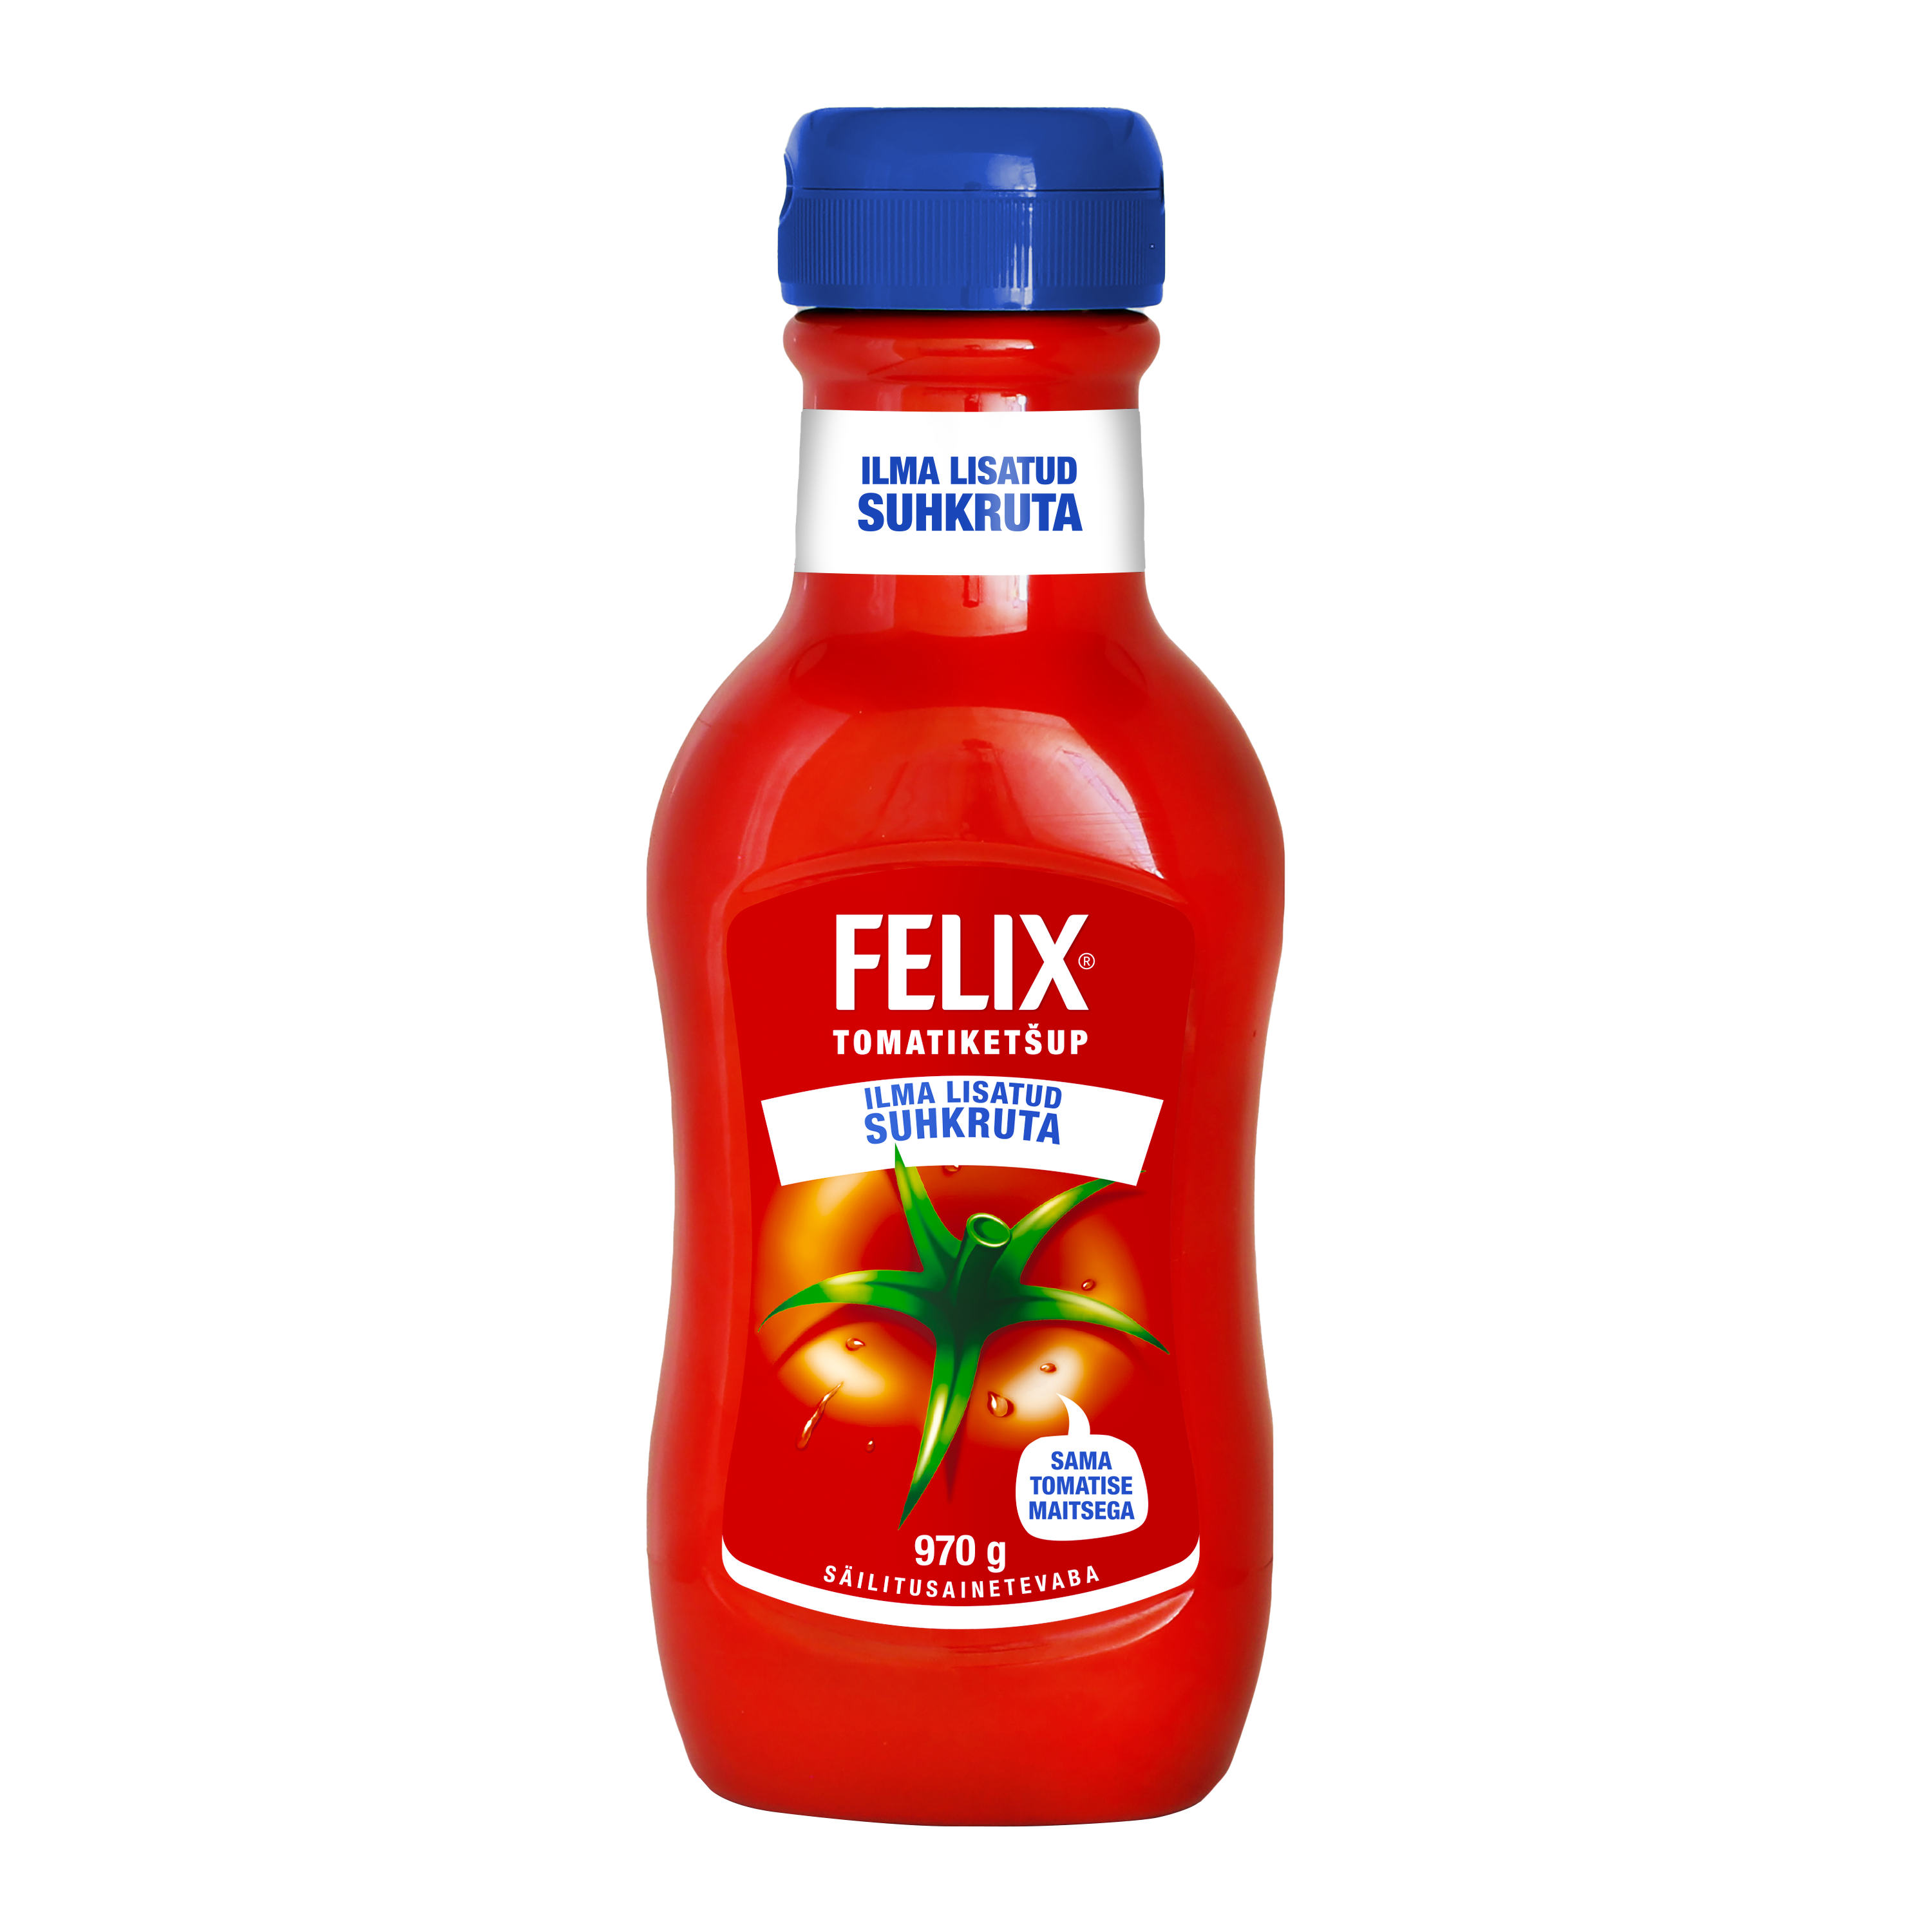 Felix Tomatiketšup ilma lisatud suhkruta 970g